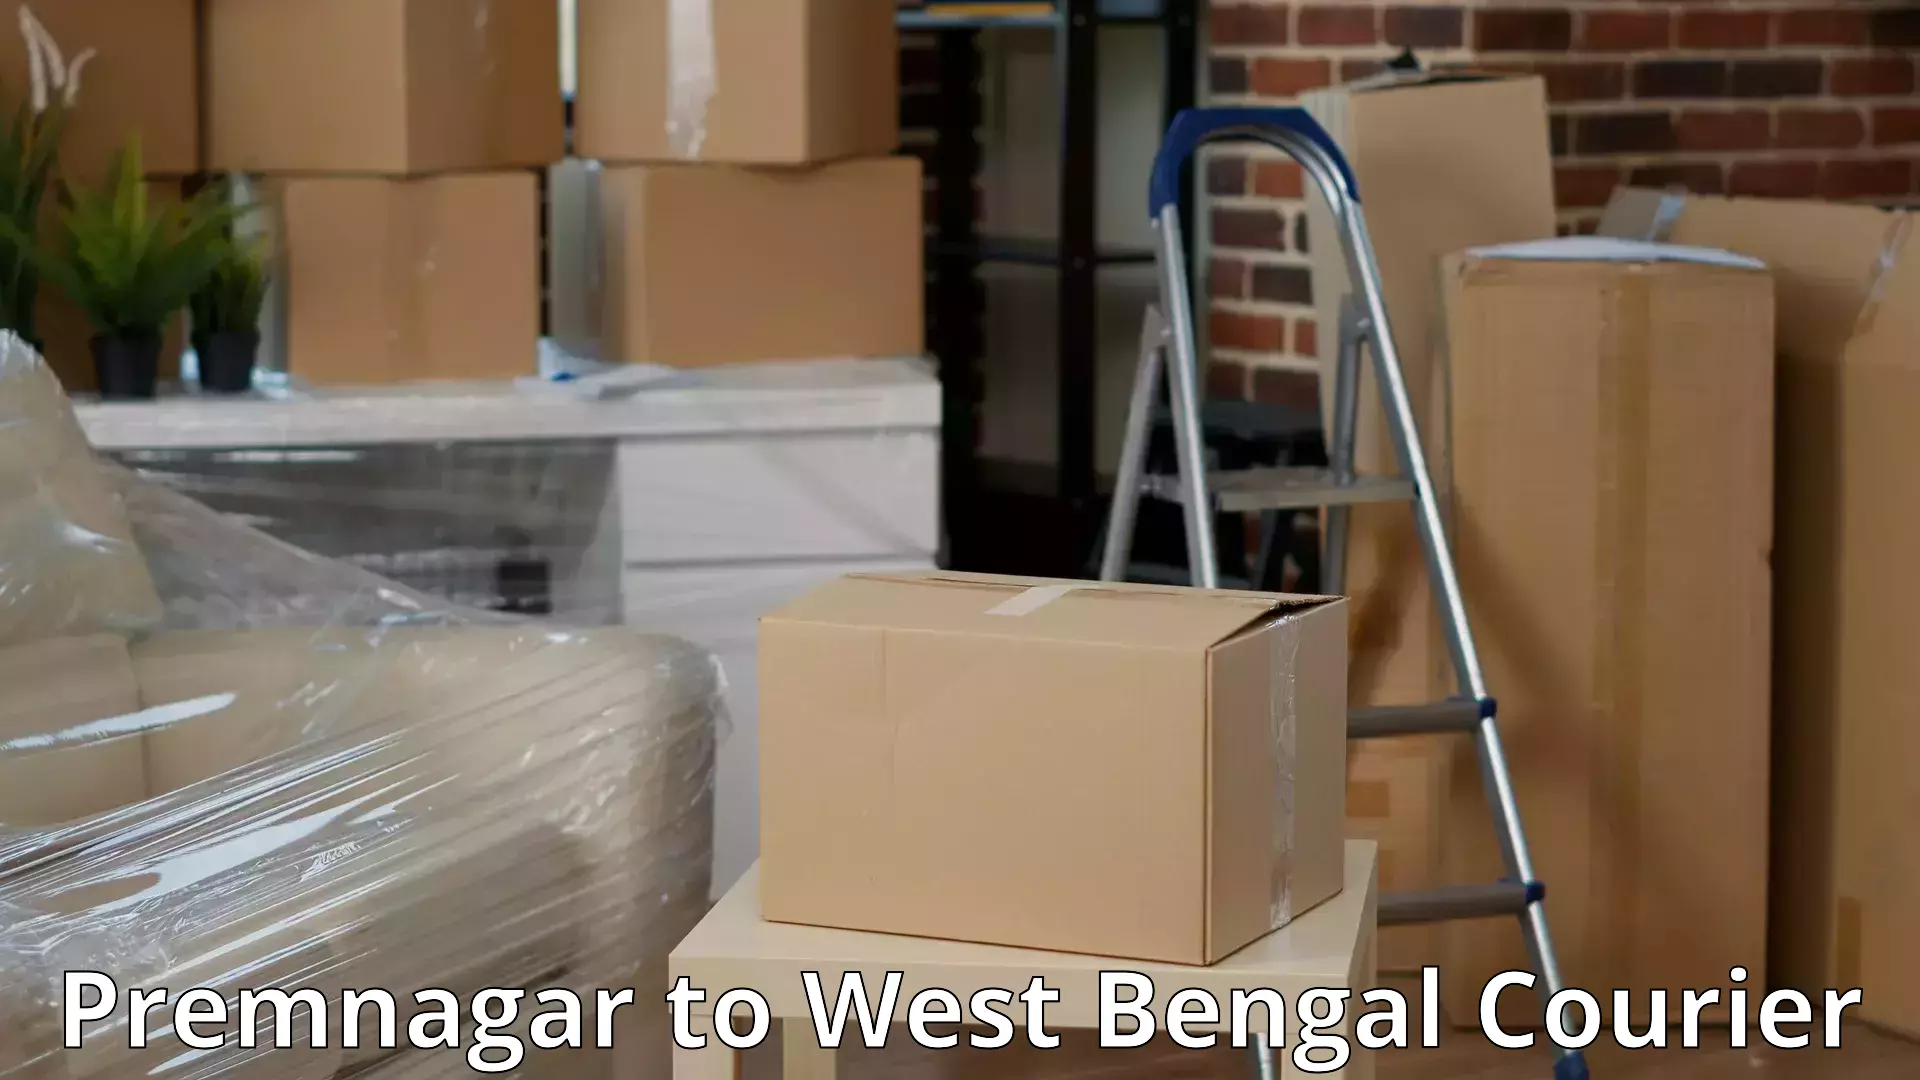 Furniture transport experts Premnagar to West Bengal